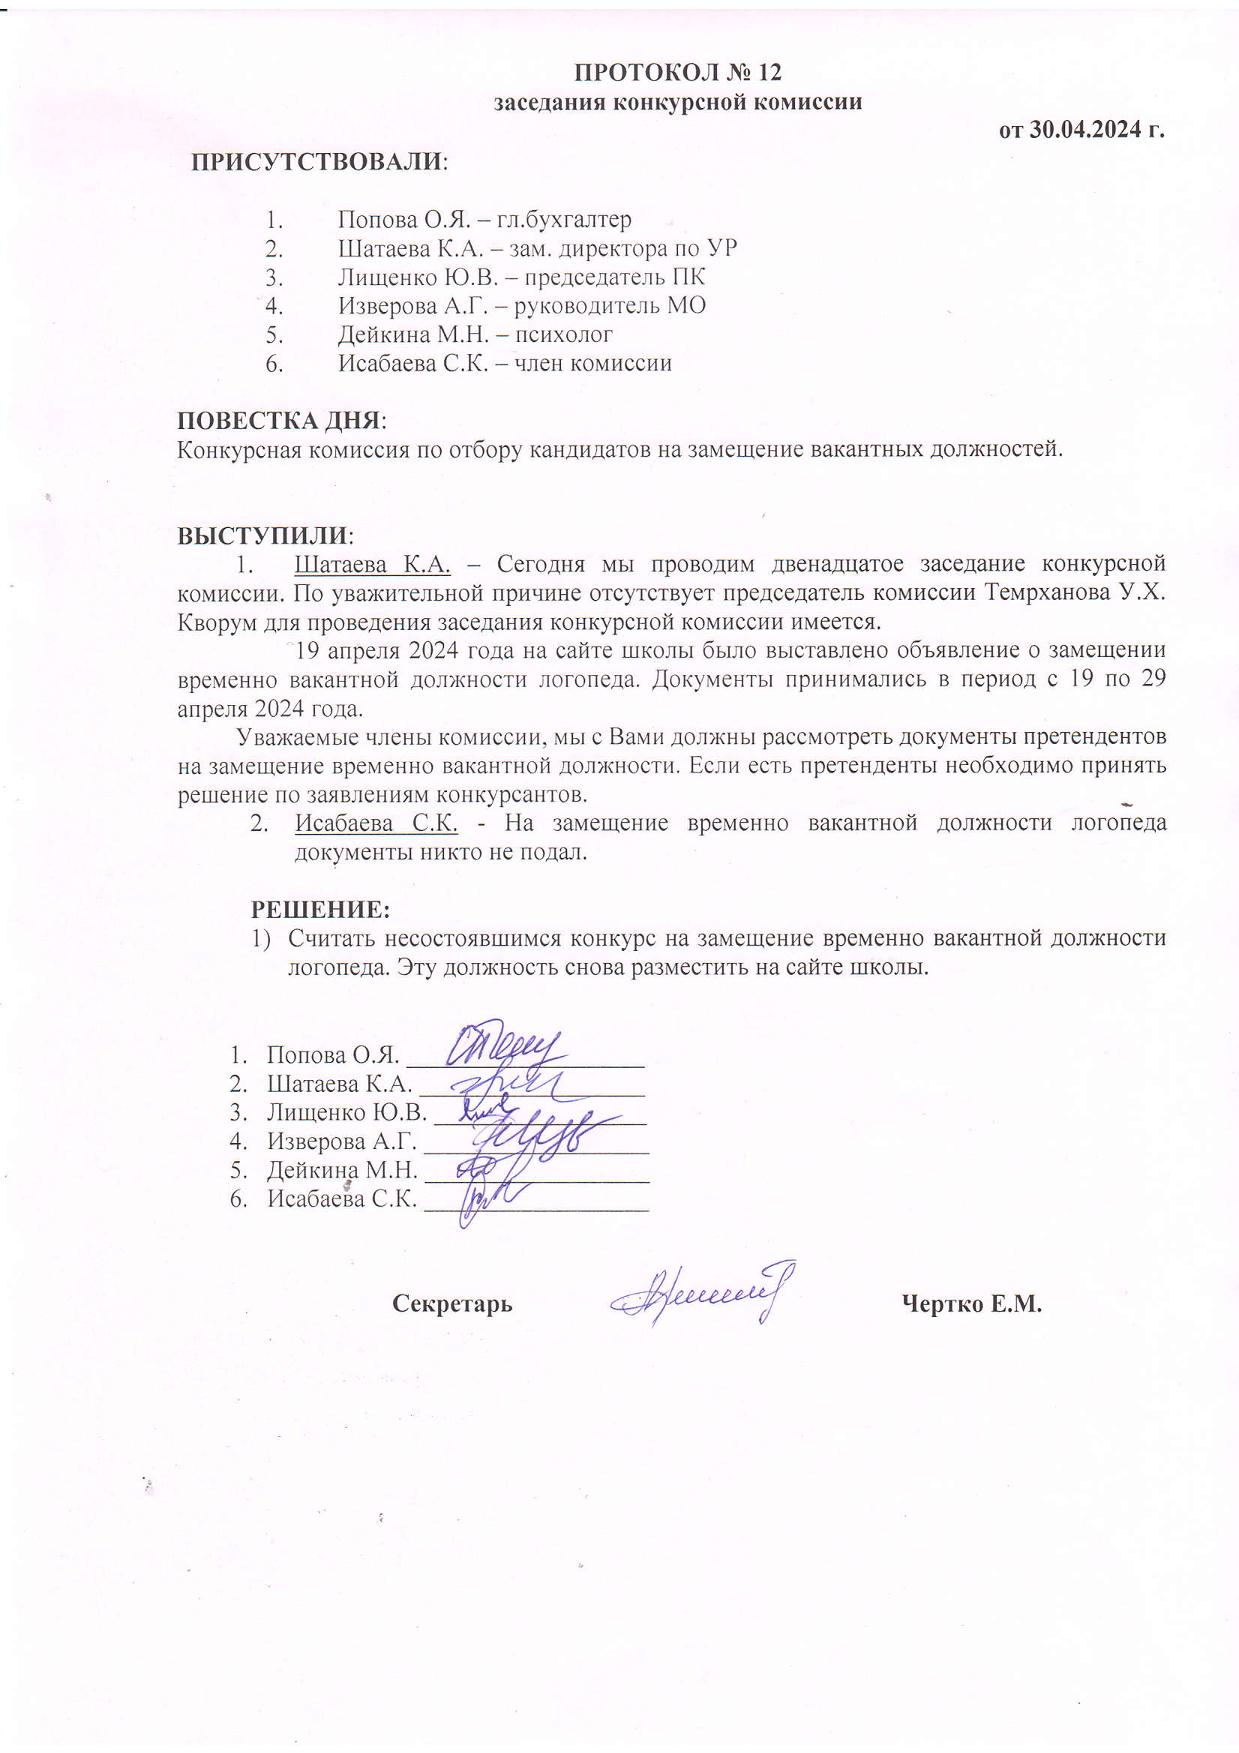 ПРОТОКОЛ №12 заседания конкурсной комиссии от 30.04.2024